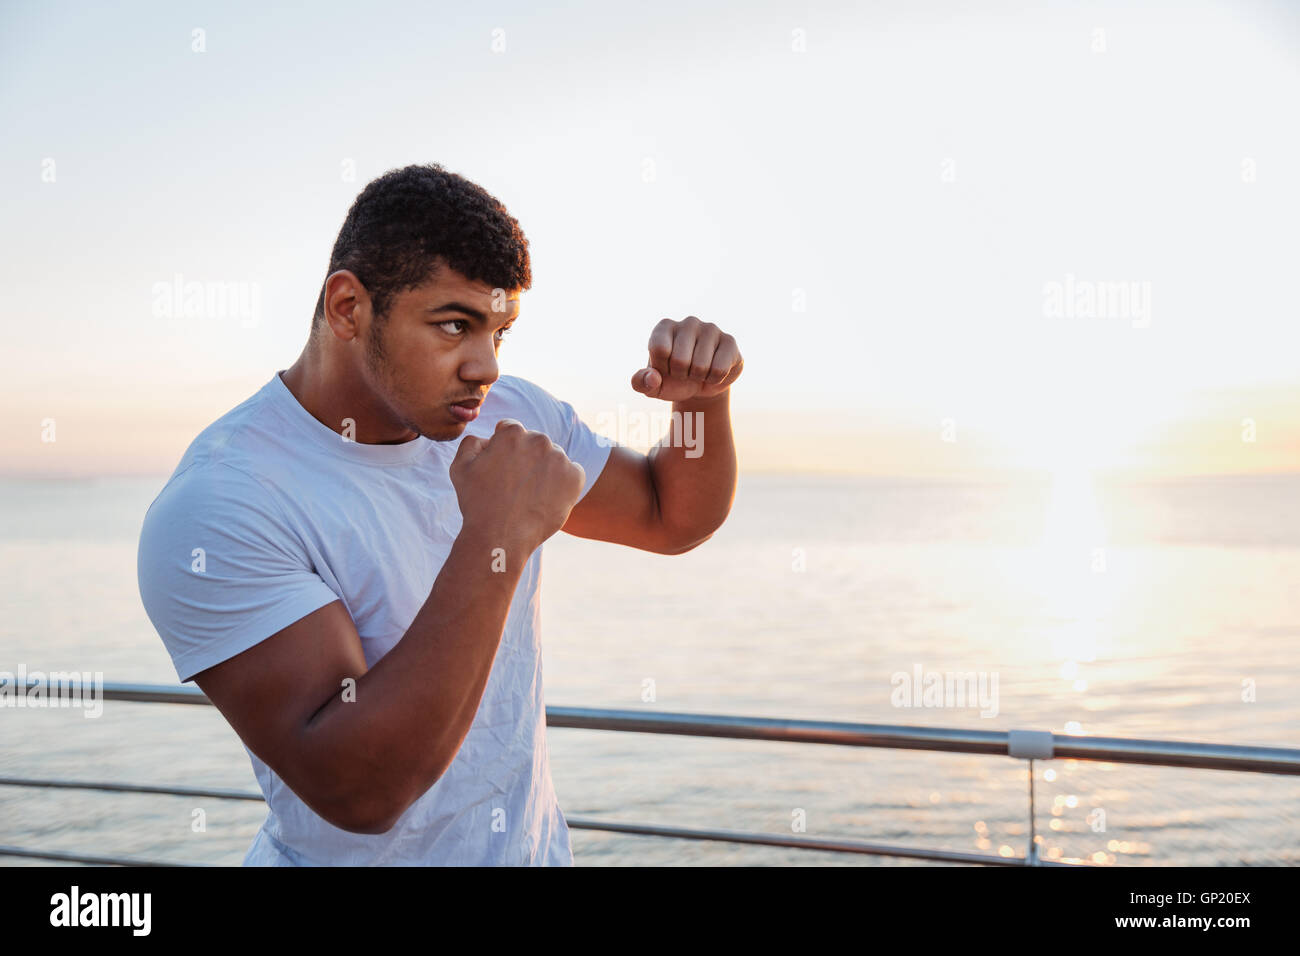 Concentrés african american man shadow boxing boxeur pratiquant à l'extérieur dans la matinée Banque D'Images